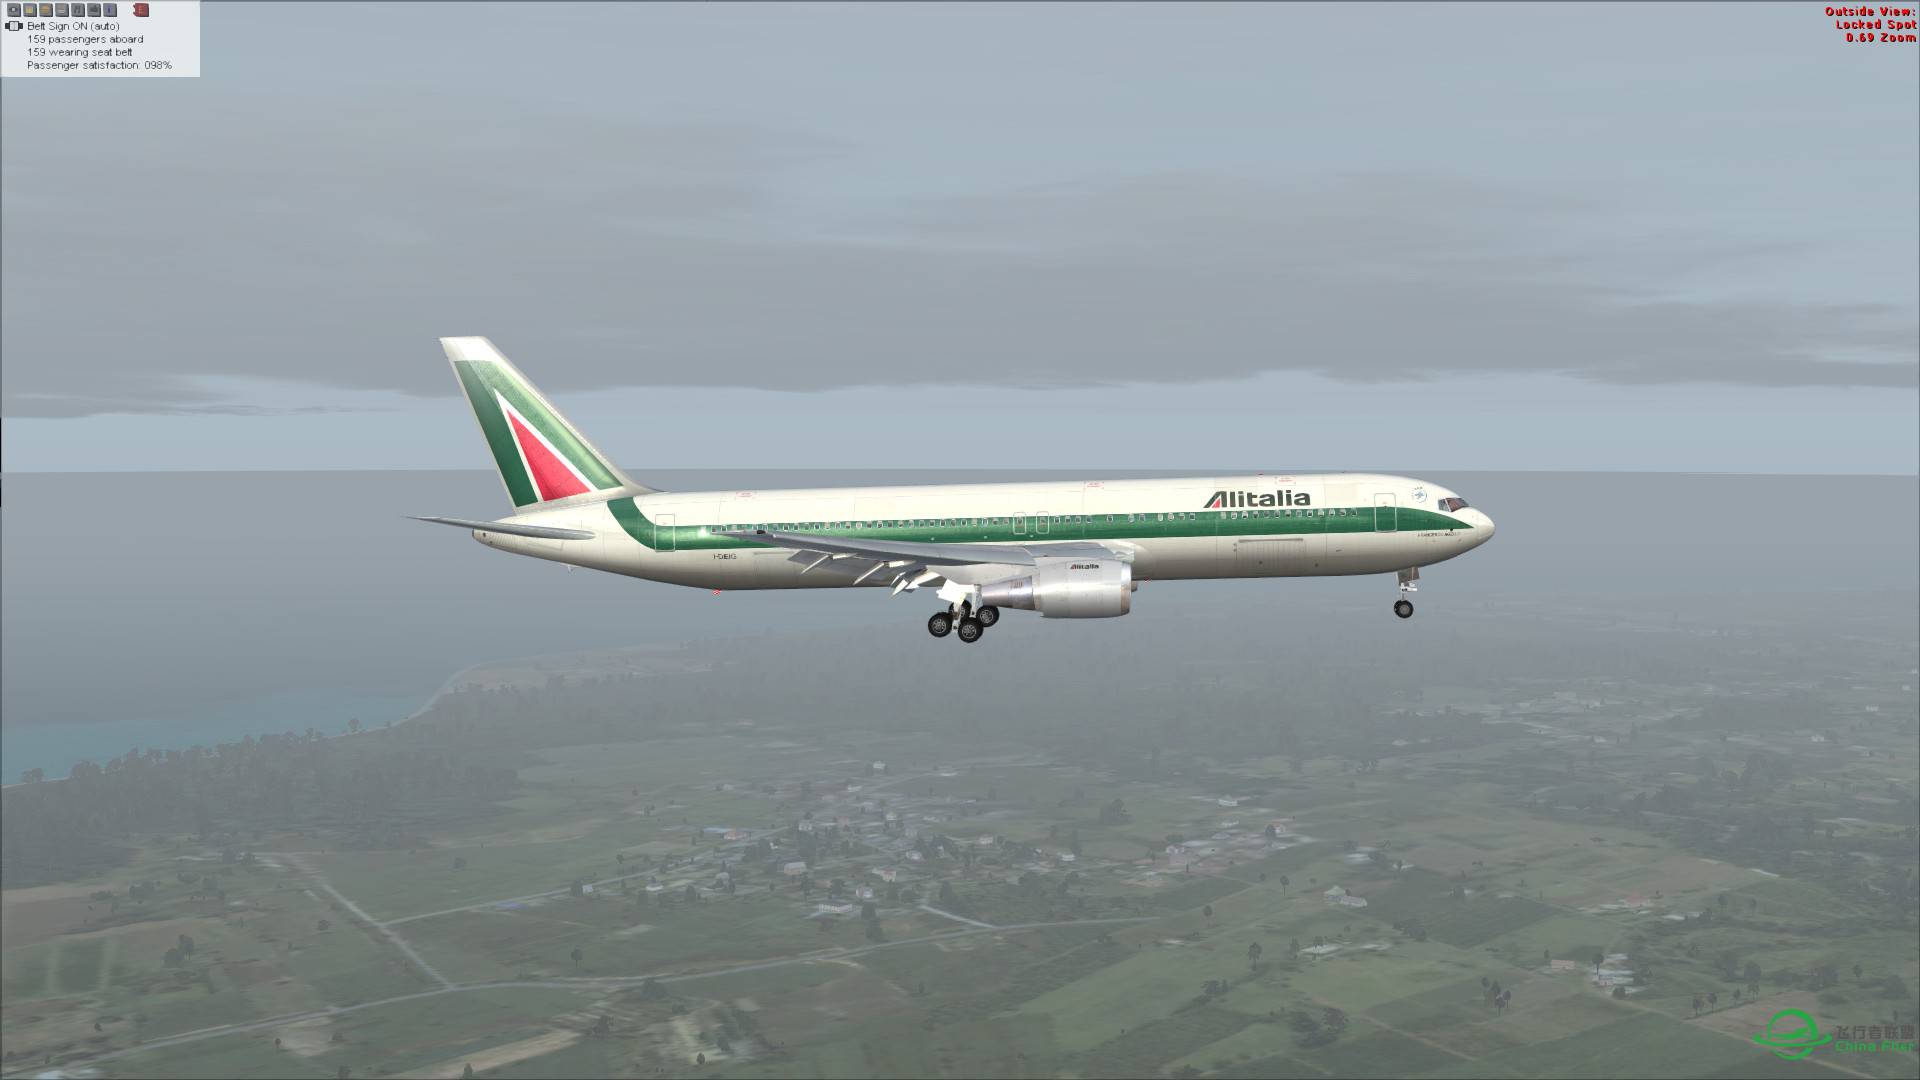 意大利航空 767-300ER 罗马-吉隆坡-899 